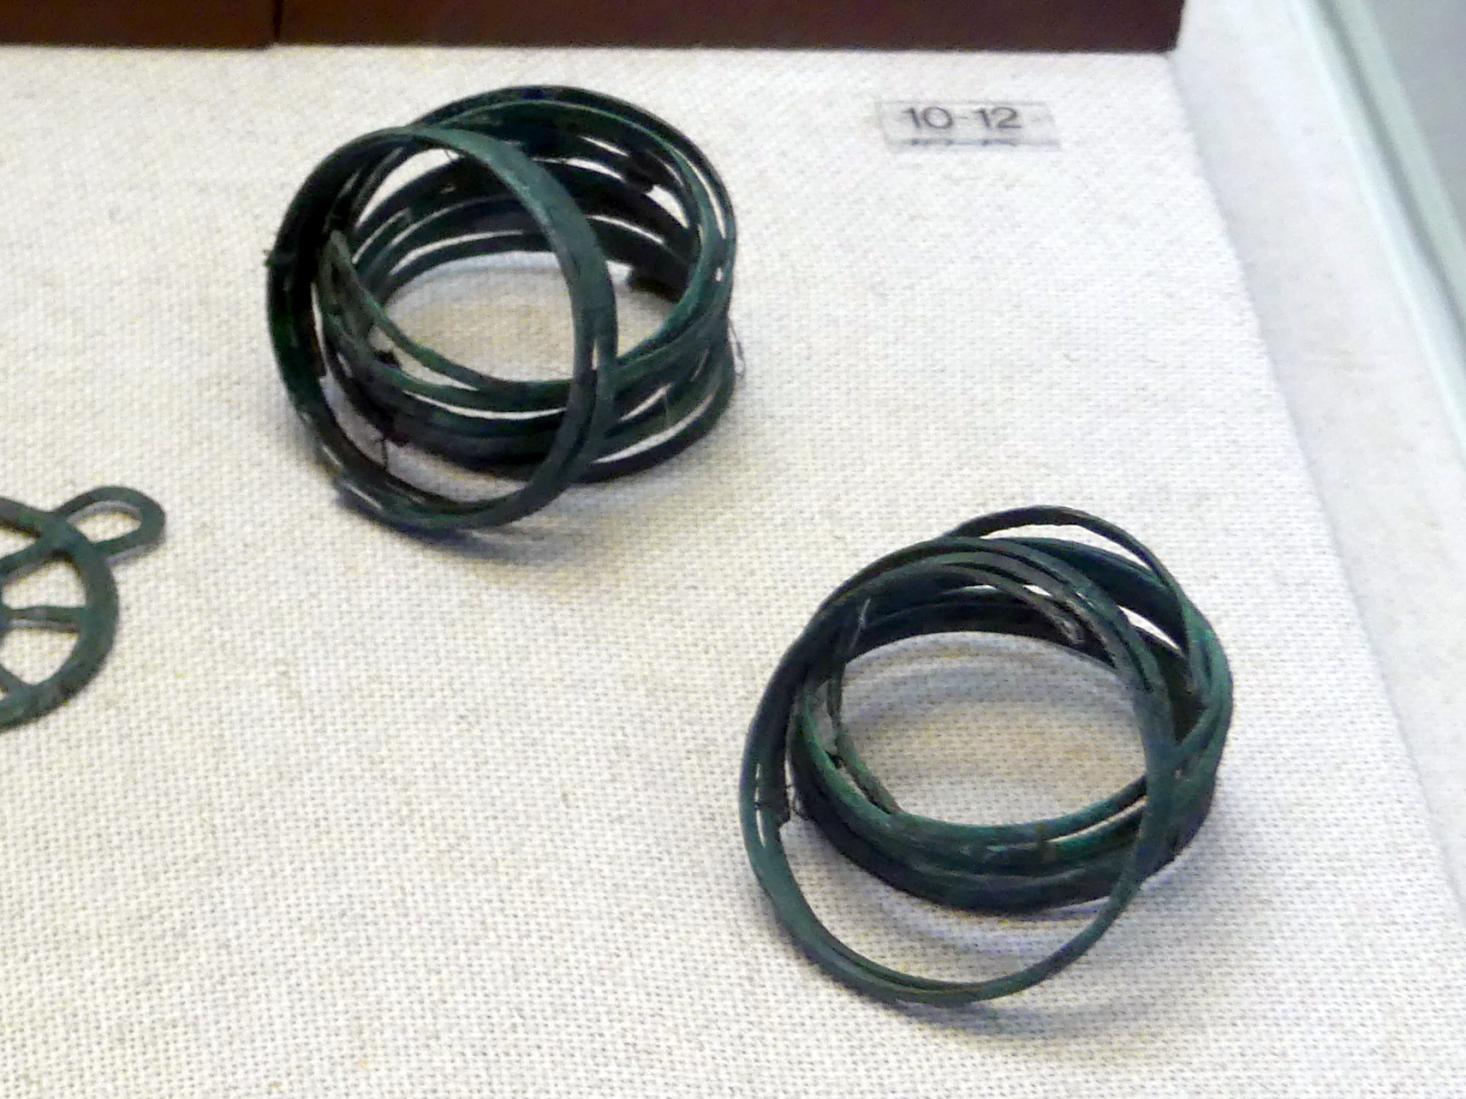 Armspirale, Mittlere Bronzezeit, 3000 - 1300 v. Chr., Bild 1/2